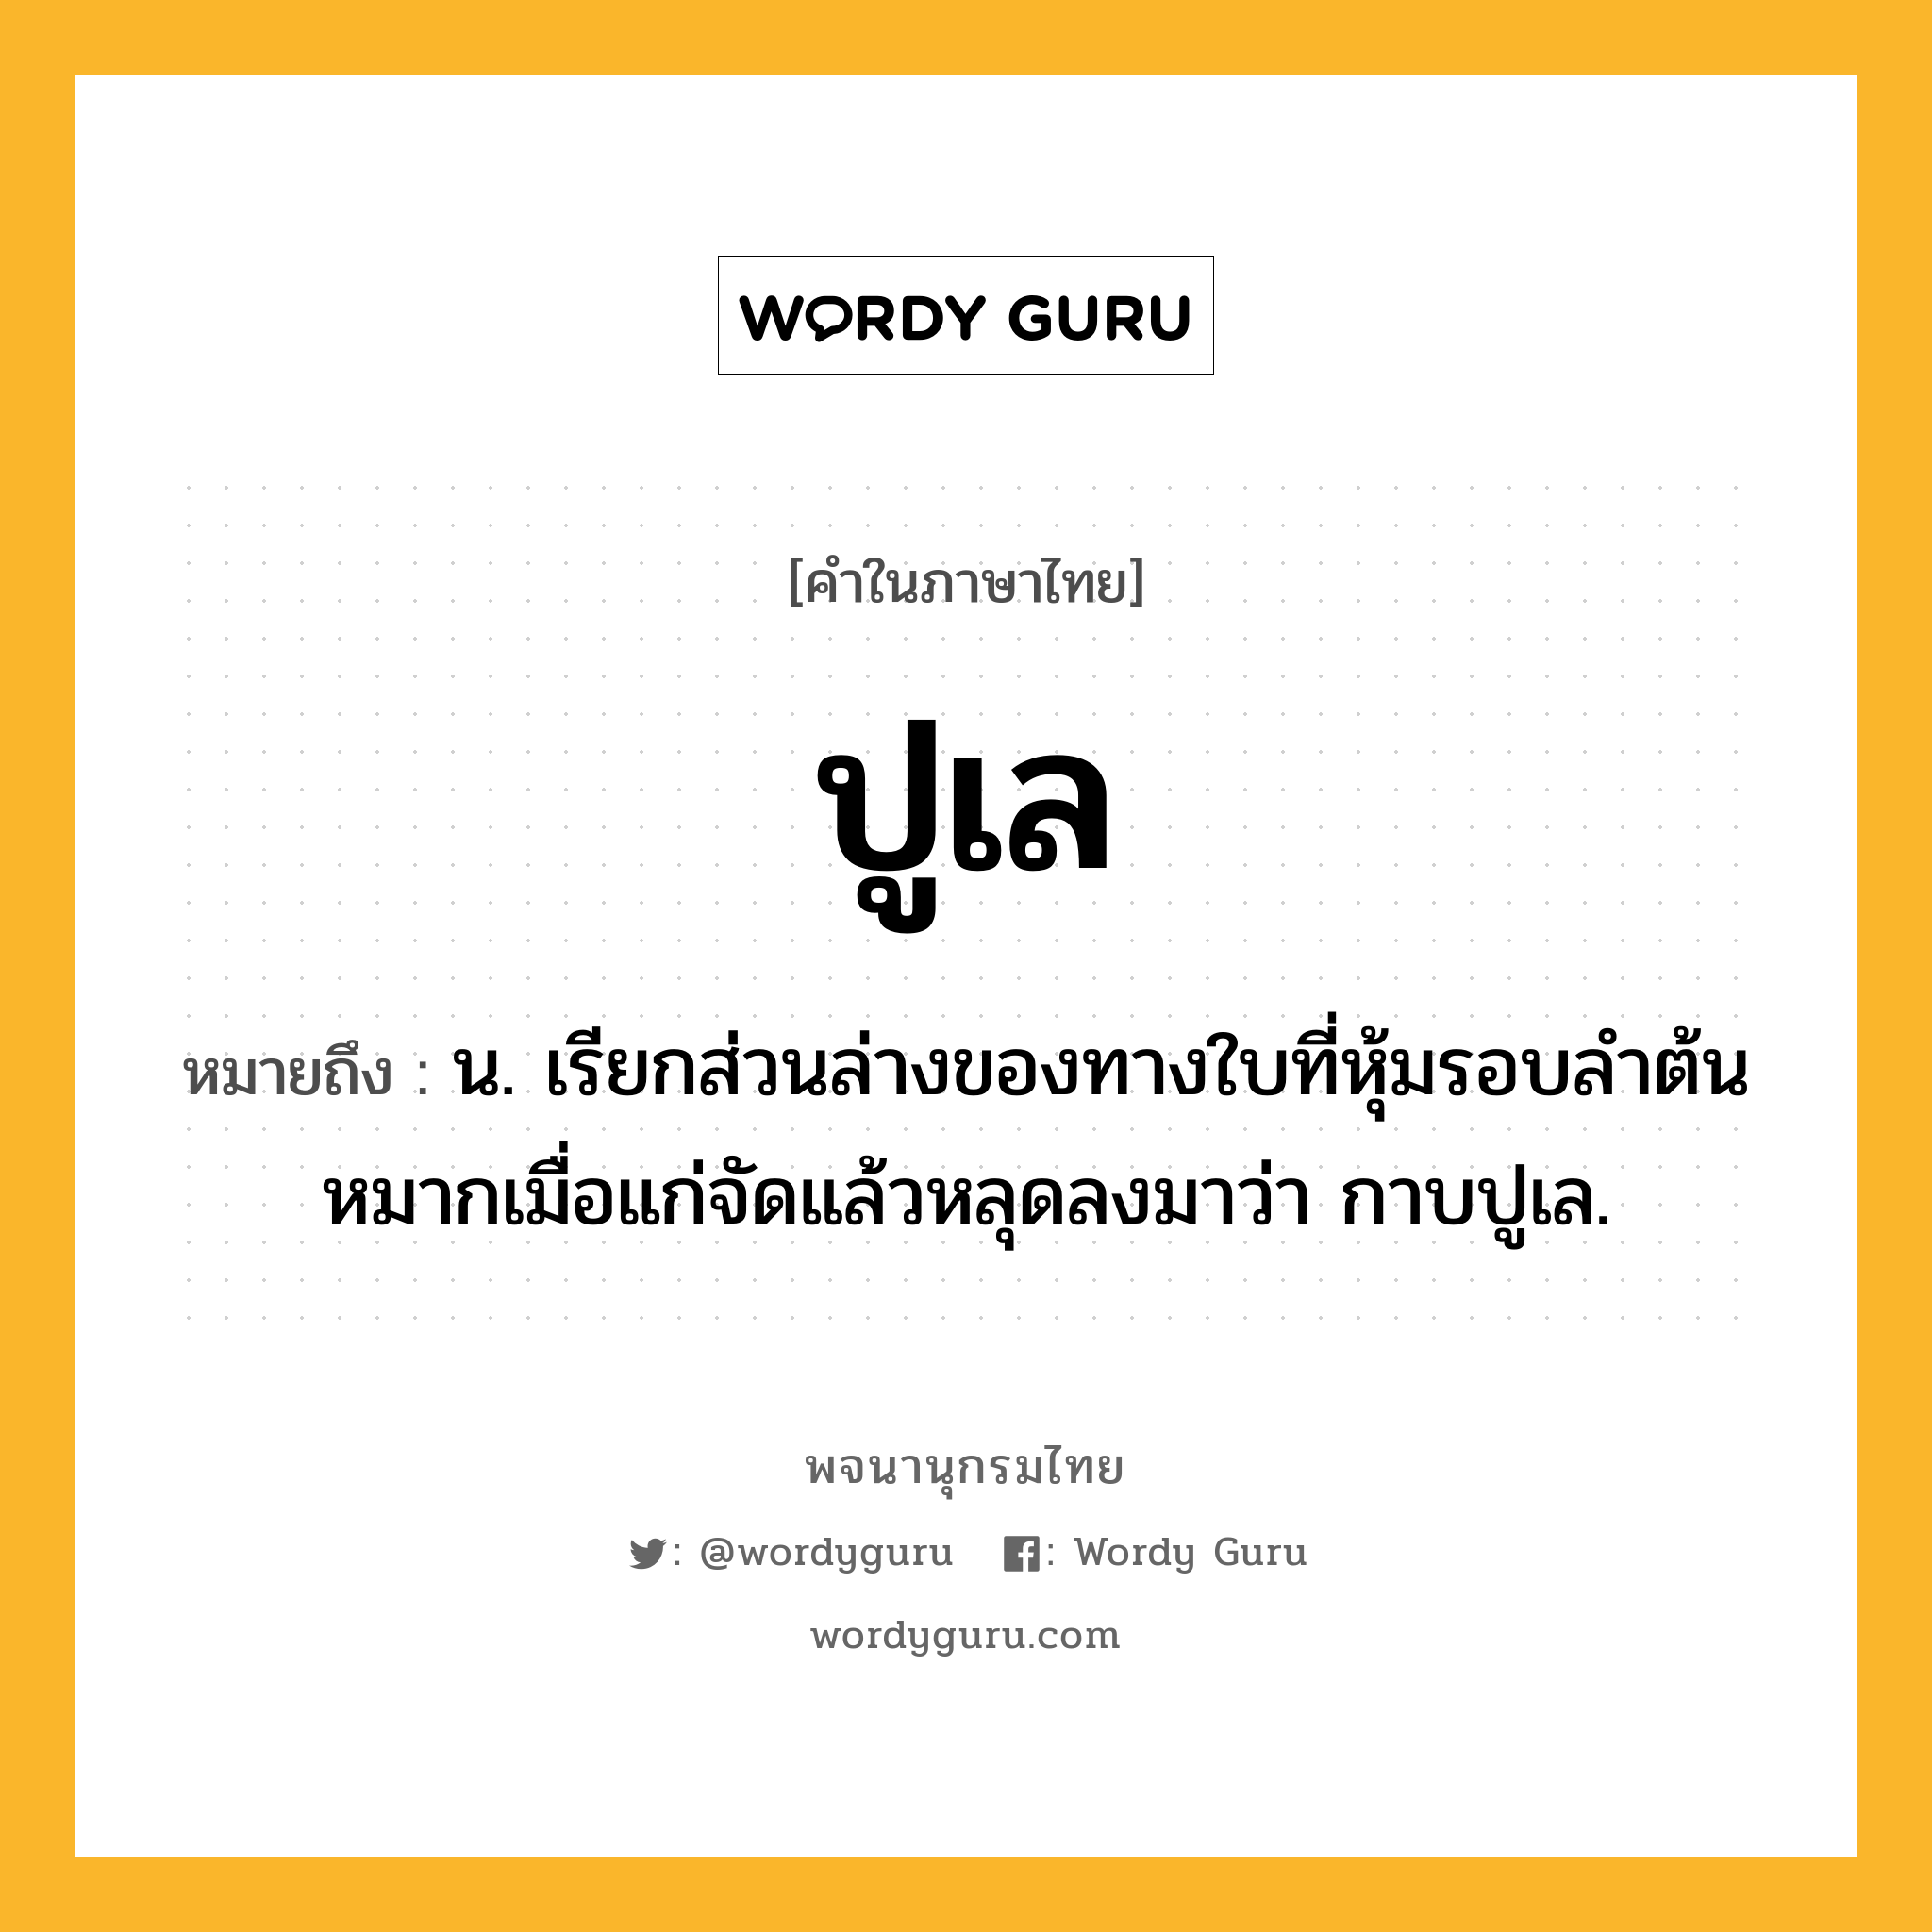 ปูเล ความหมาย หมายถึงอะไร?, คำในภาษาไทย ปูเล หมายถึง น. เรียกส่วนล่างของทางใบที่หุ้มรอบลําต้นหมากเมื่อแก่จัดแล้วหลุดลงมาว่า กาบปูเล.